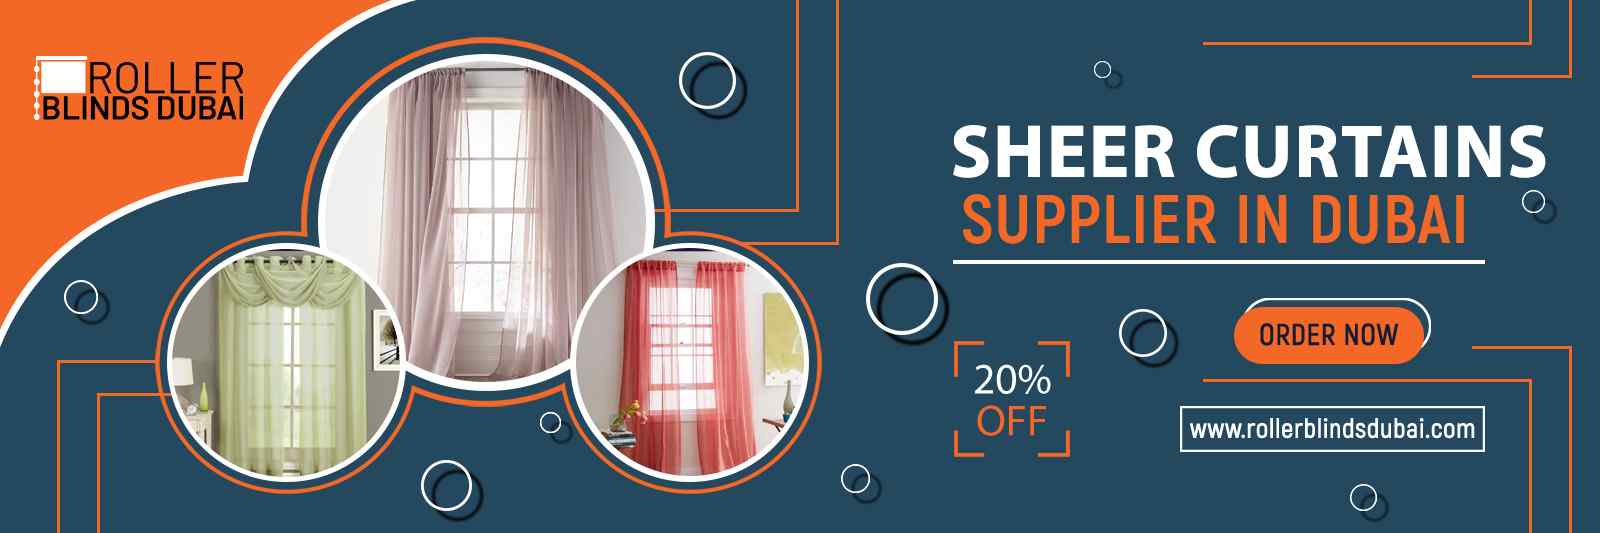 Sheer-Curtains-Suppliers-Dubai